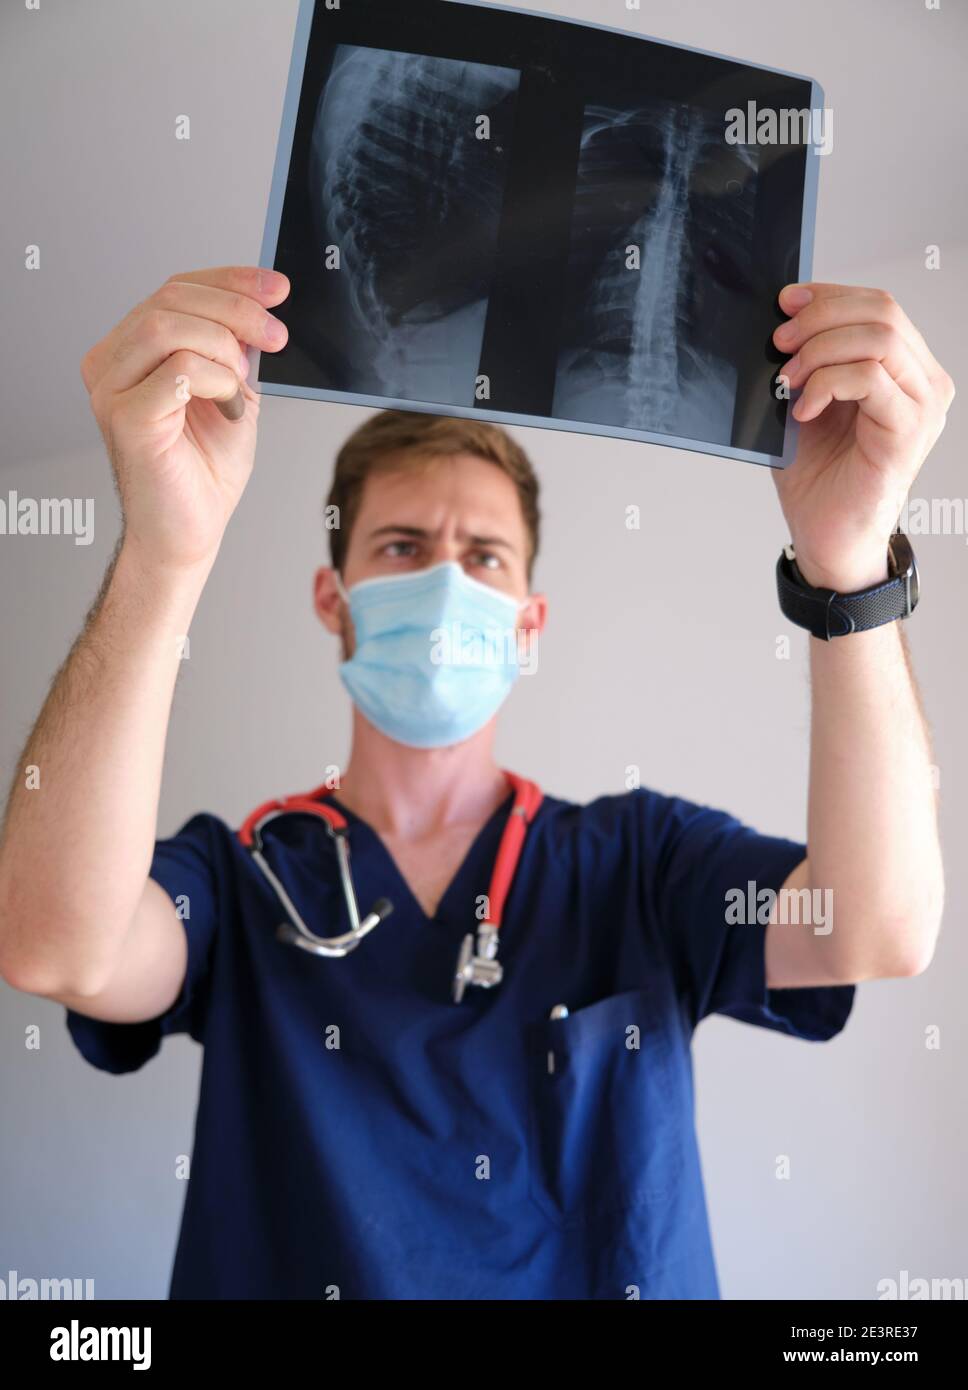 Ein hübscher Arzt, der Peeling, Stethoskop und Gesichtsmaske trug und während der sars COV 2 Pandemie Covid 19 auf eine Röntgenaufnahme blickte Stockfoto